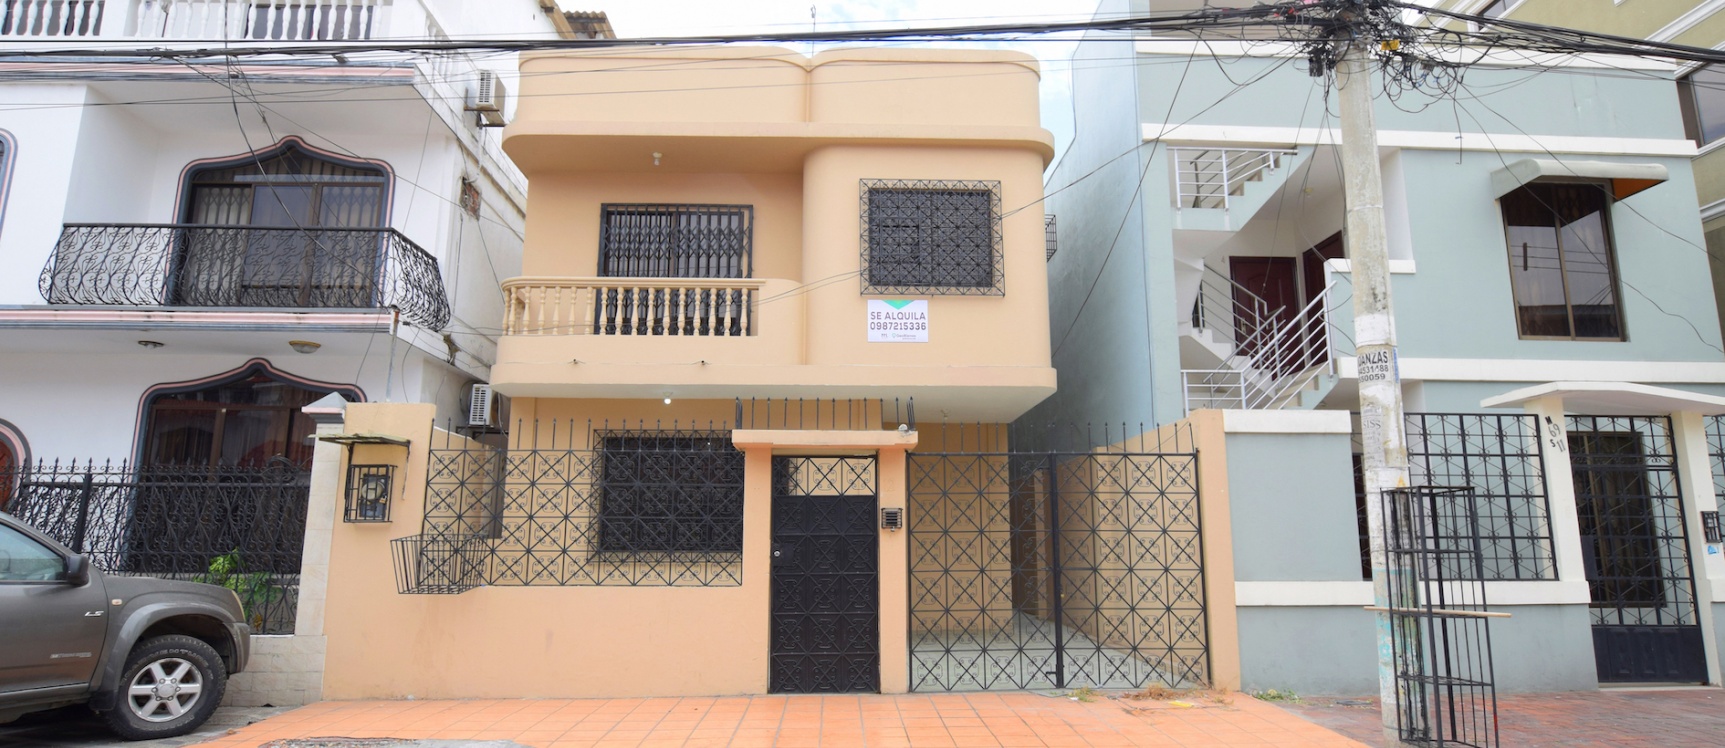 GeoBienes - Casa en alquiler ubicada en la Garzota, Norte de Guayaquil - Plusvalia Guayaquil Casas de venta y alquiler Inmobiliaria Ecuador